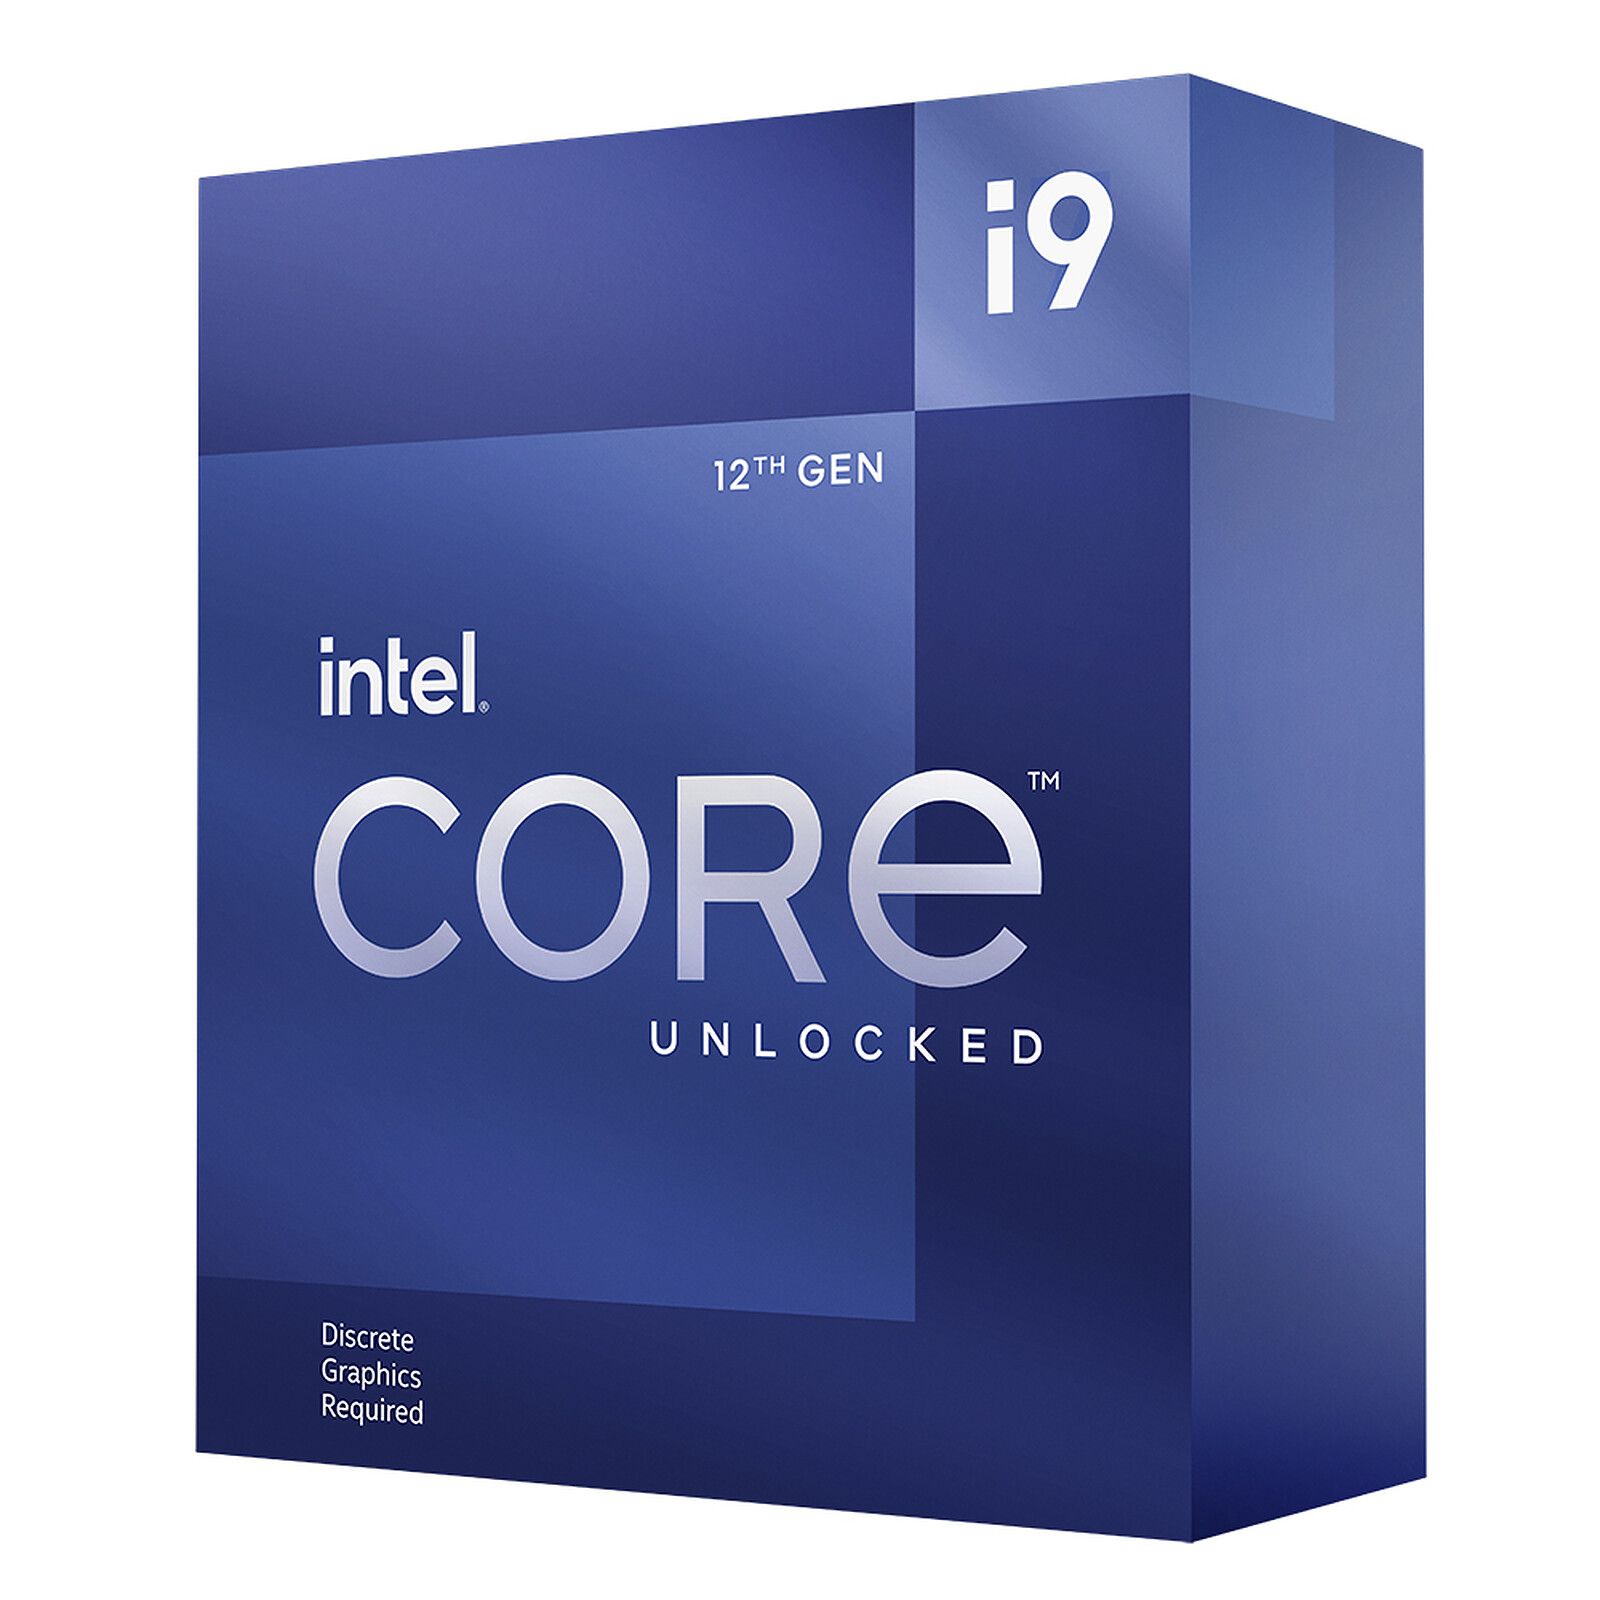 5,5 GHz Pour Le Processeur Intel Core I9-12900KS - Pause Hardware